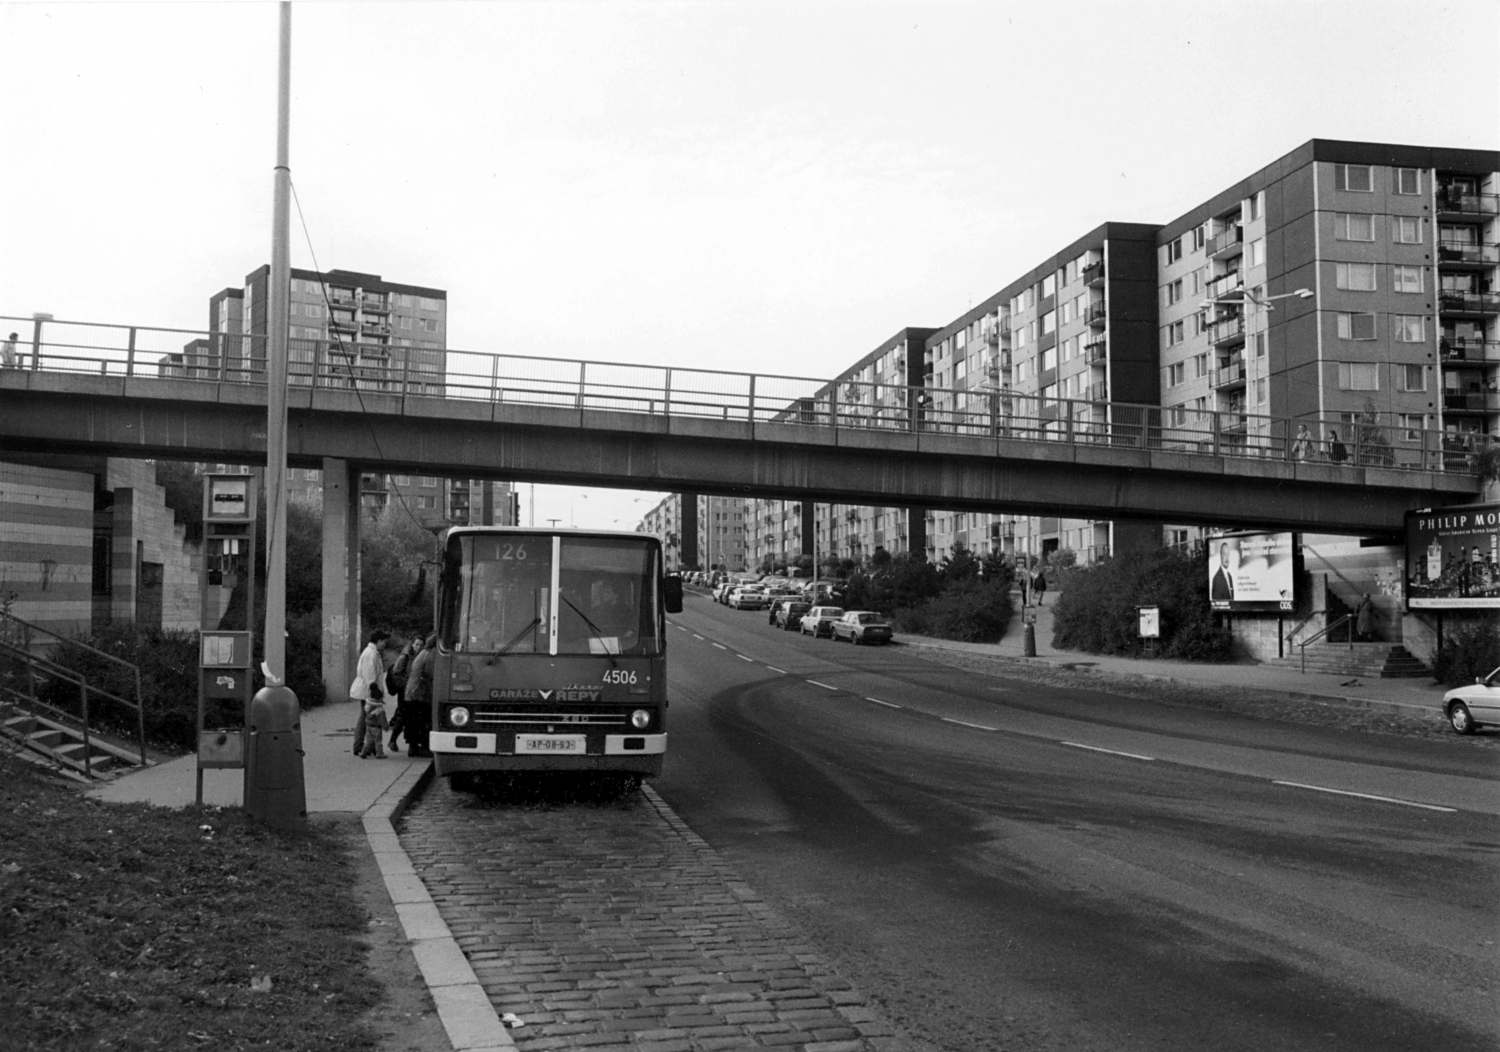 V zastávce Chaplinovo náměstí byl v roce 1998 zachycen autobus Ikarus 280 ev. č. 4506. V té době se o tramvajích na Barrandov stále jen mluvilo, ačkoli větší část současného sídliště již existovala. (foto: Archiv DPP)